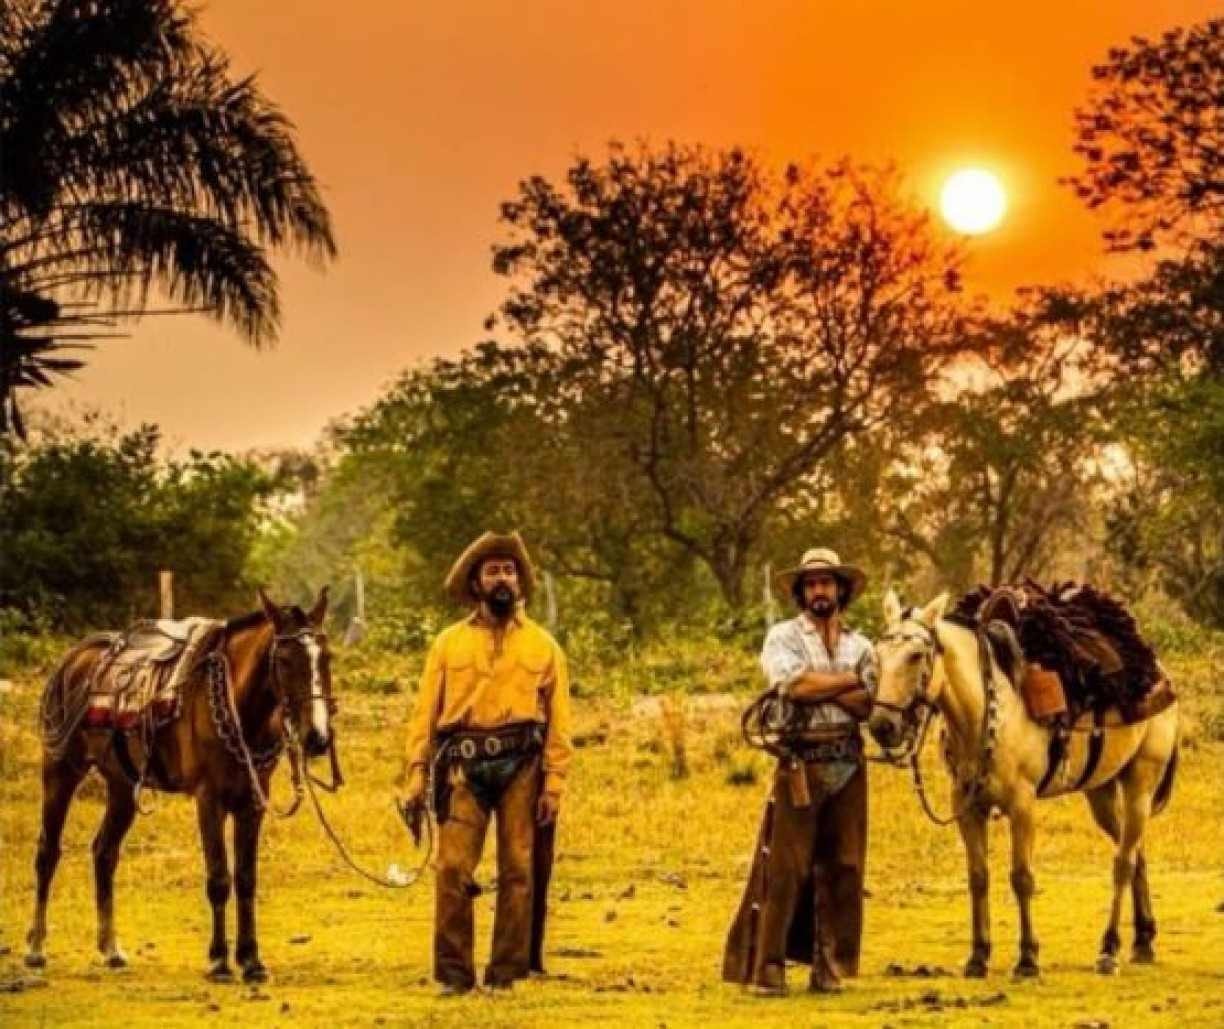 PANTANAL NOVELA 2022: Quando começa a novela Pantanal? Qual é a história de Pantanal? Que horas vai passar Pantanal na Globo?